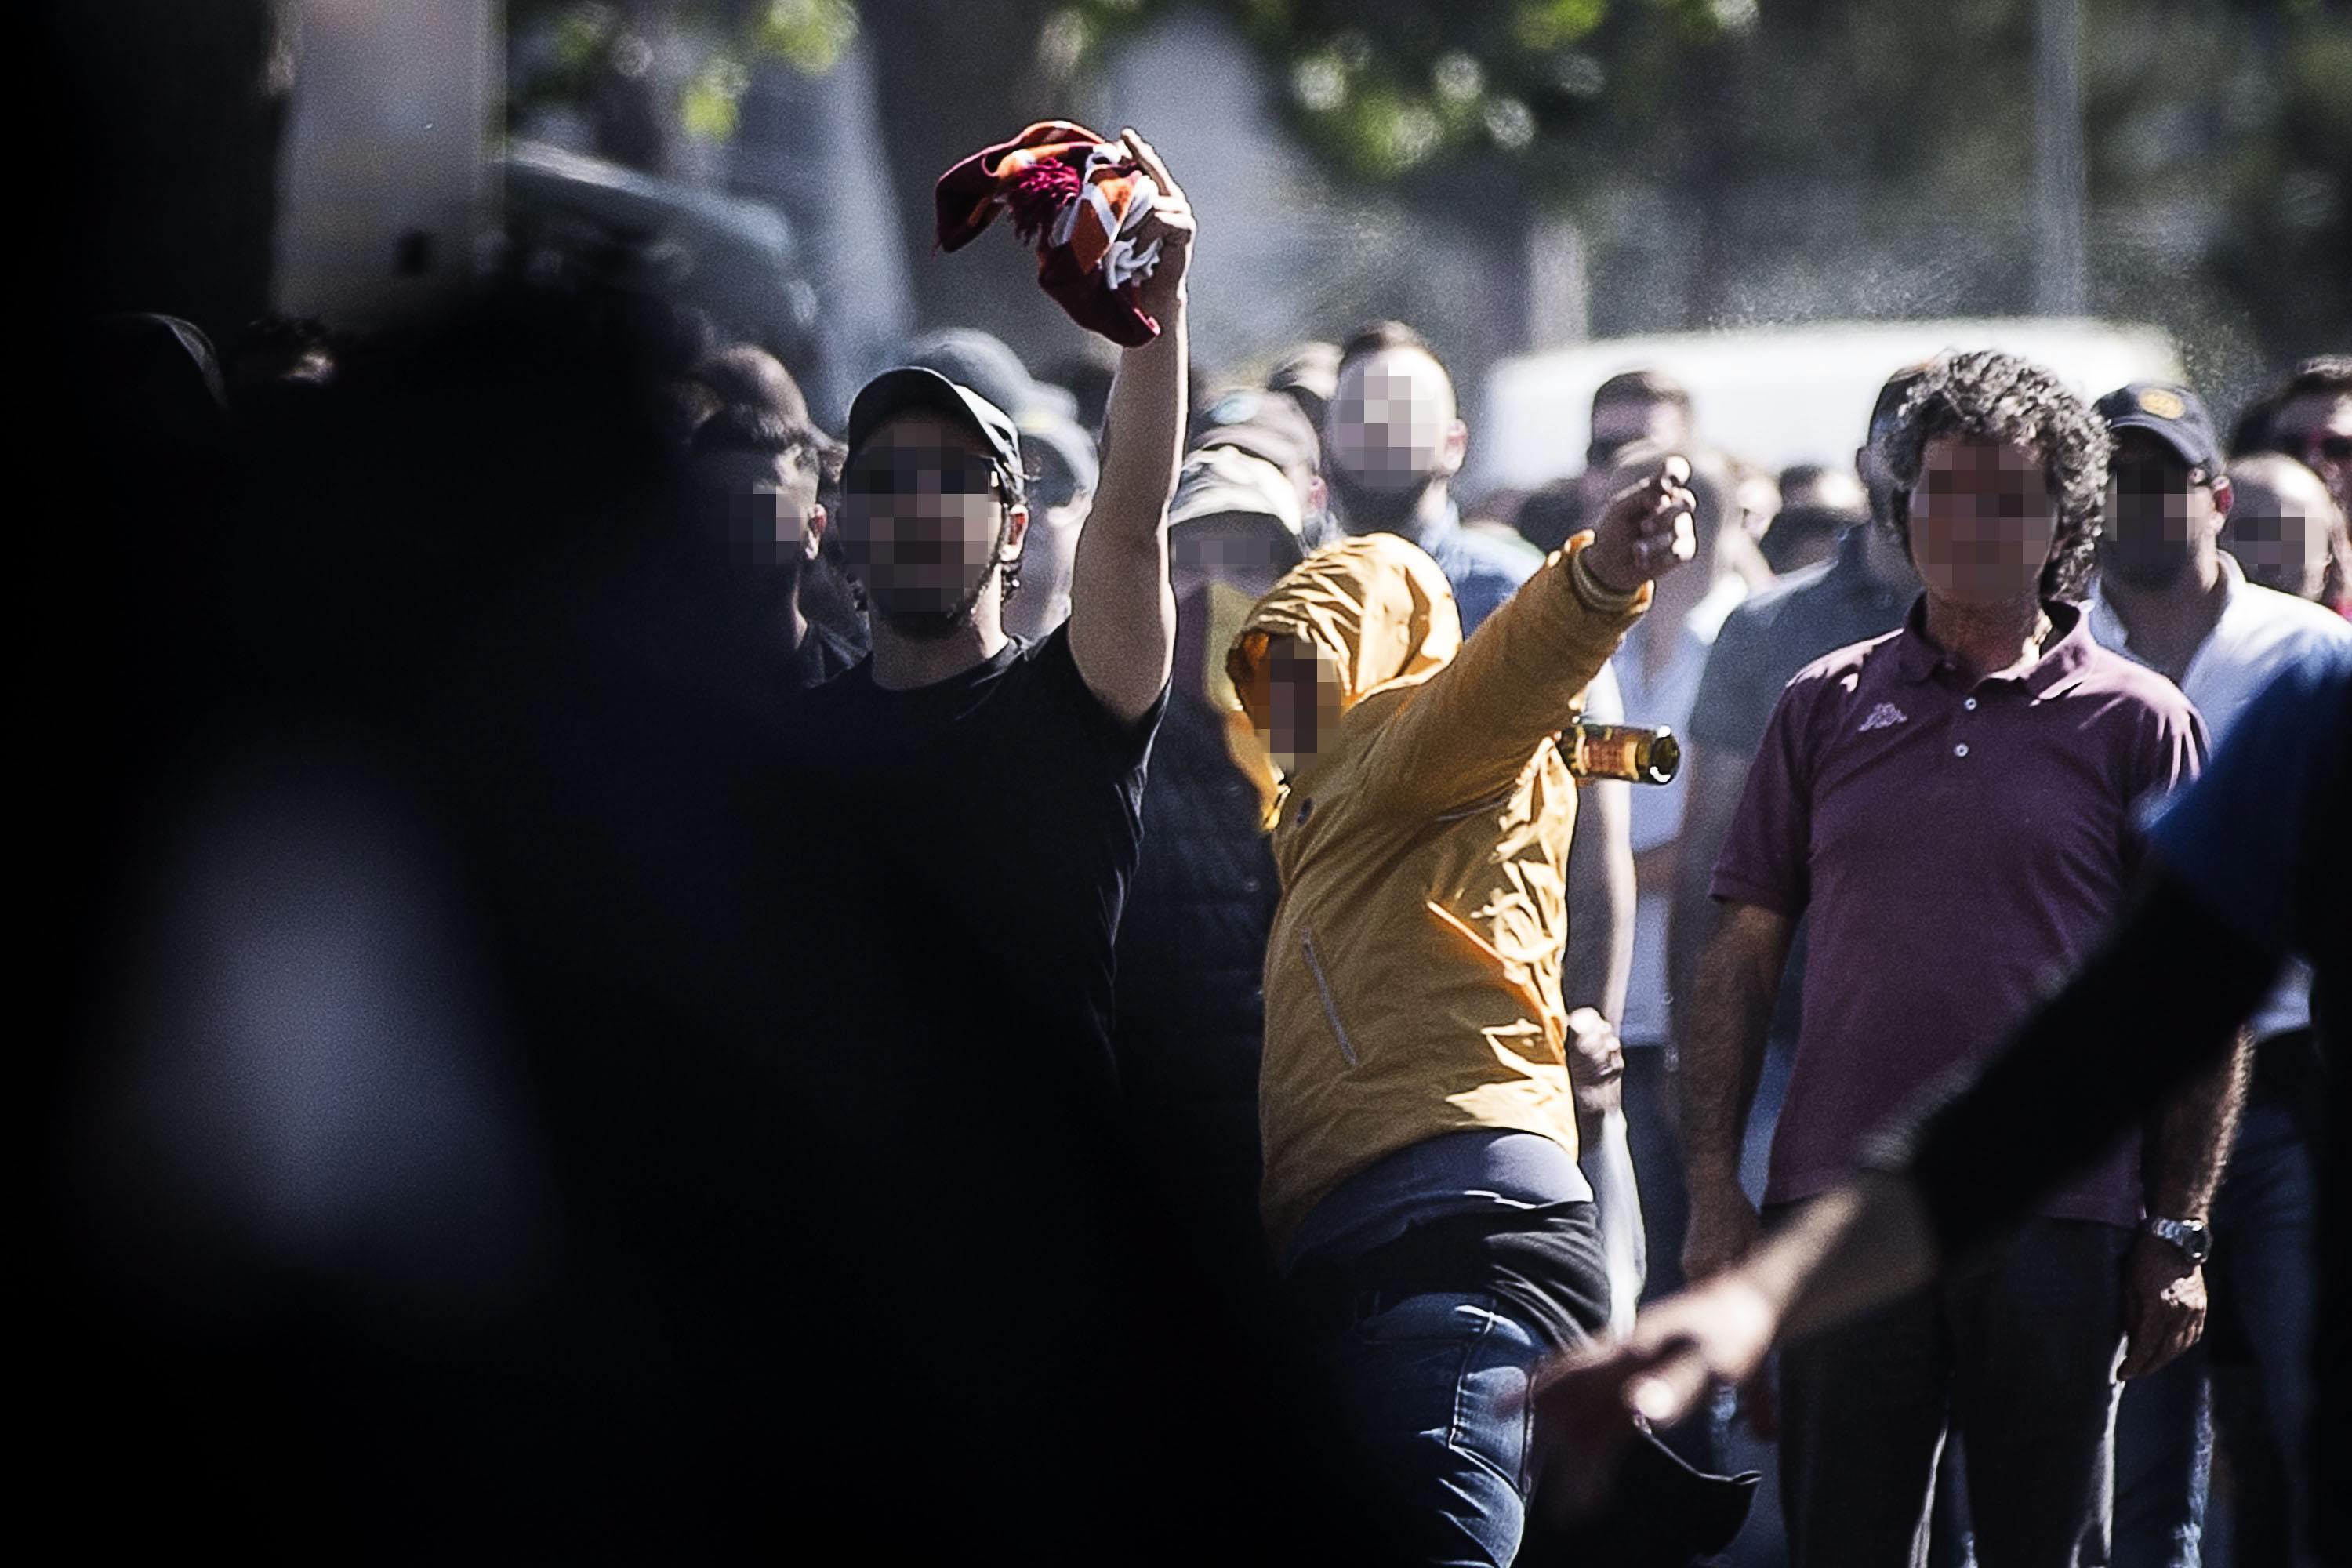 Bitwa kibiców przed mecze Lazio - Roma